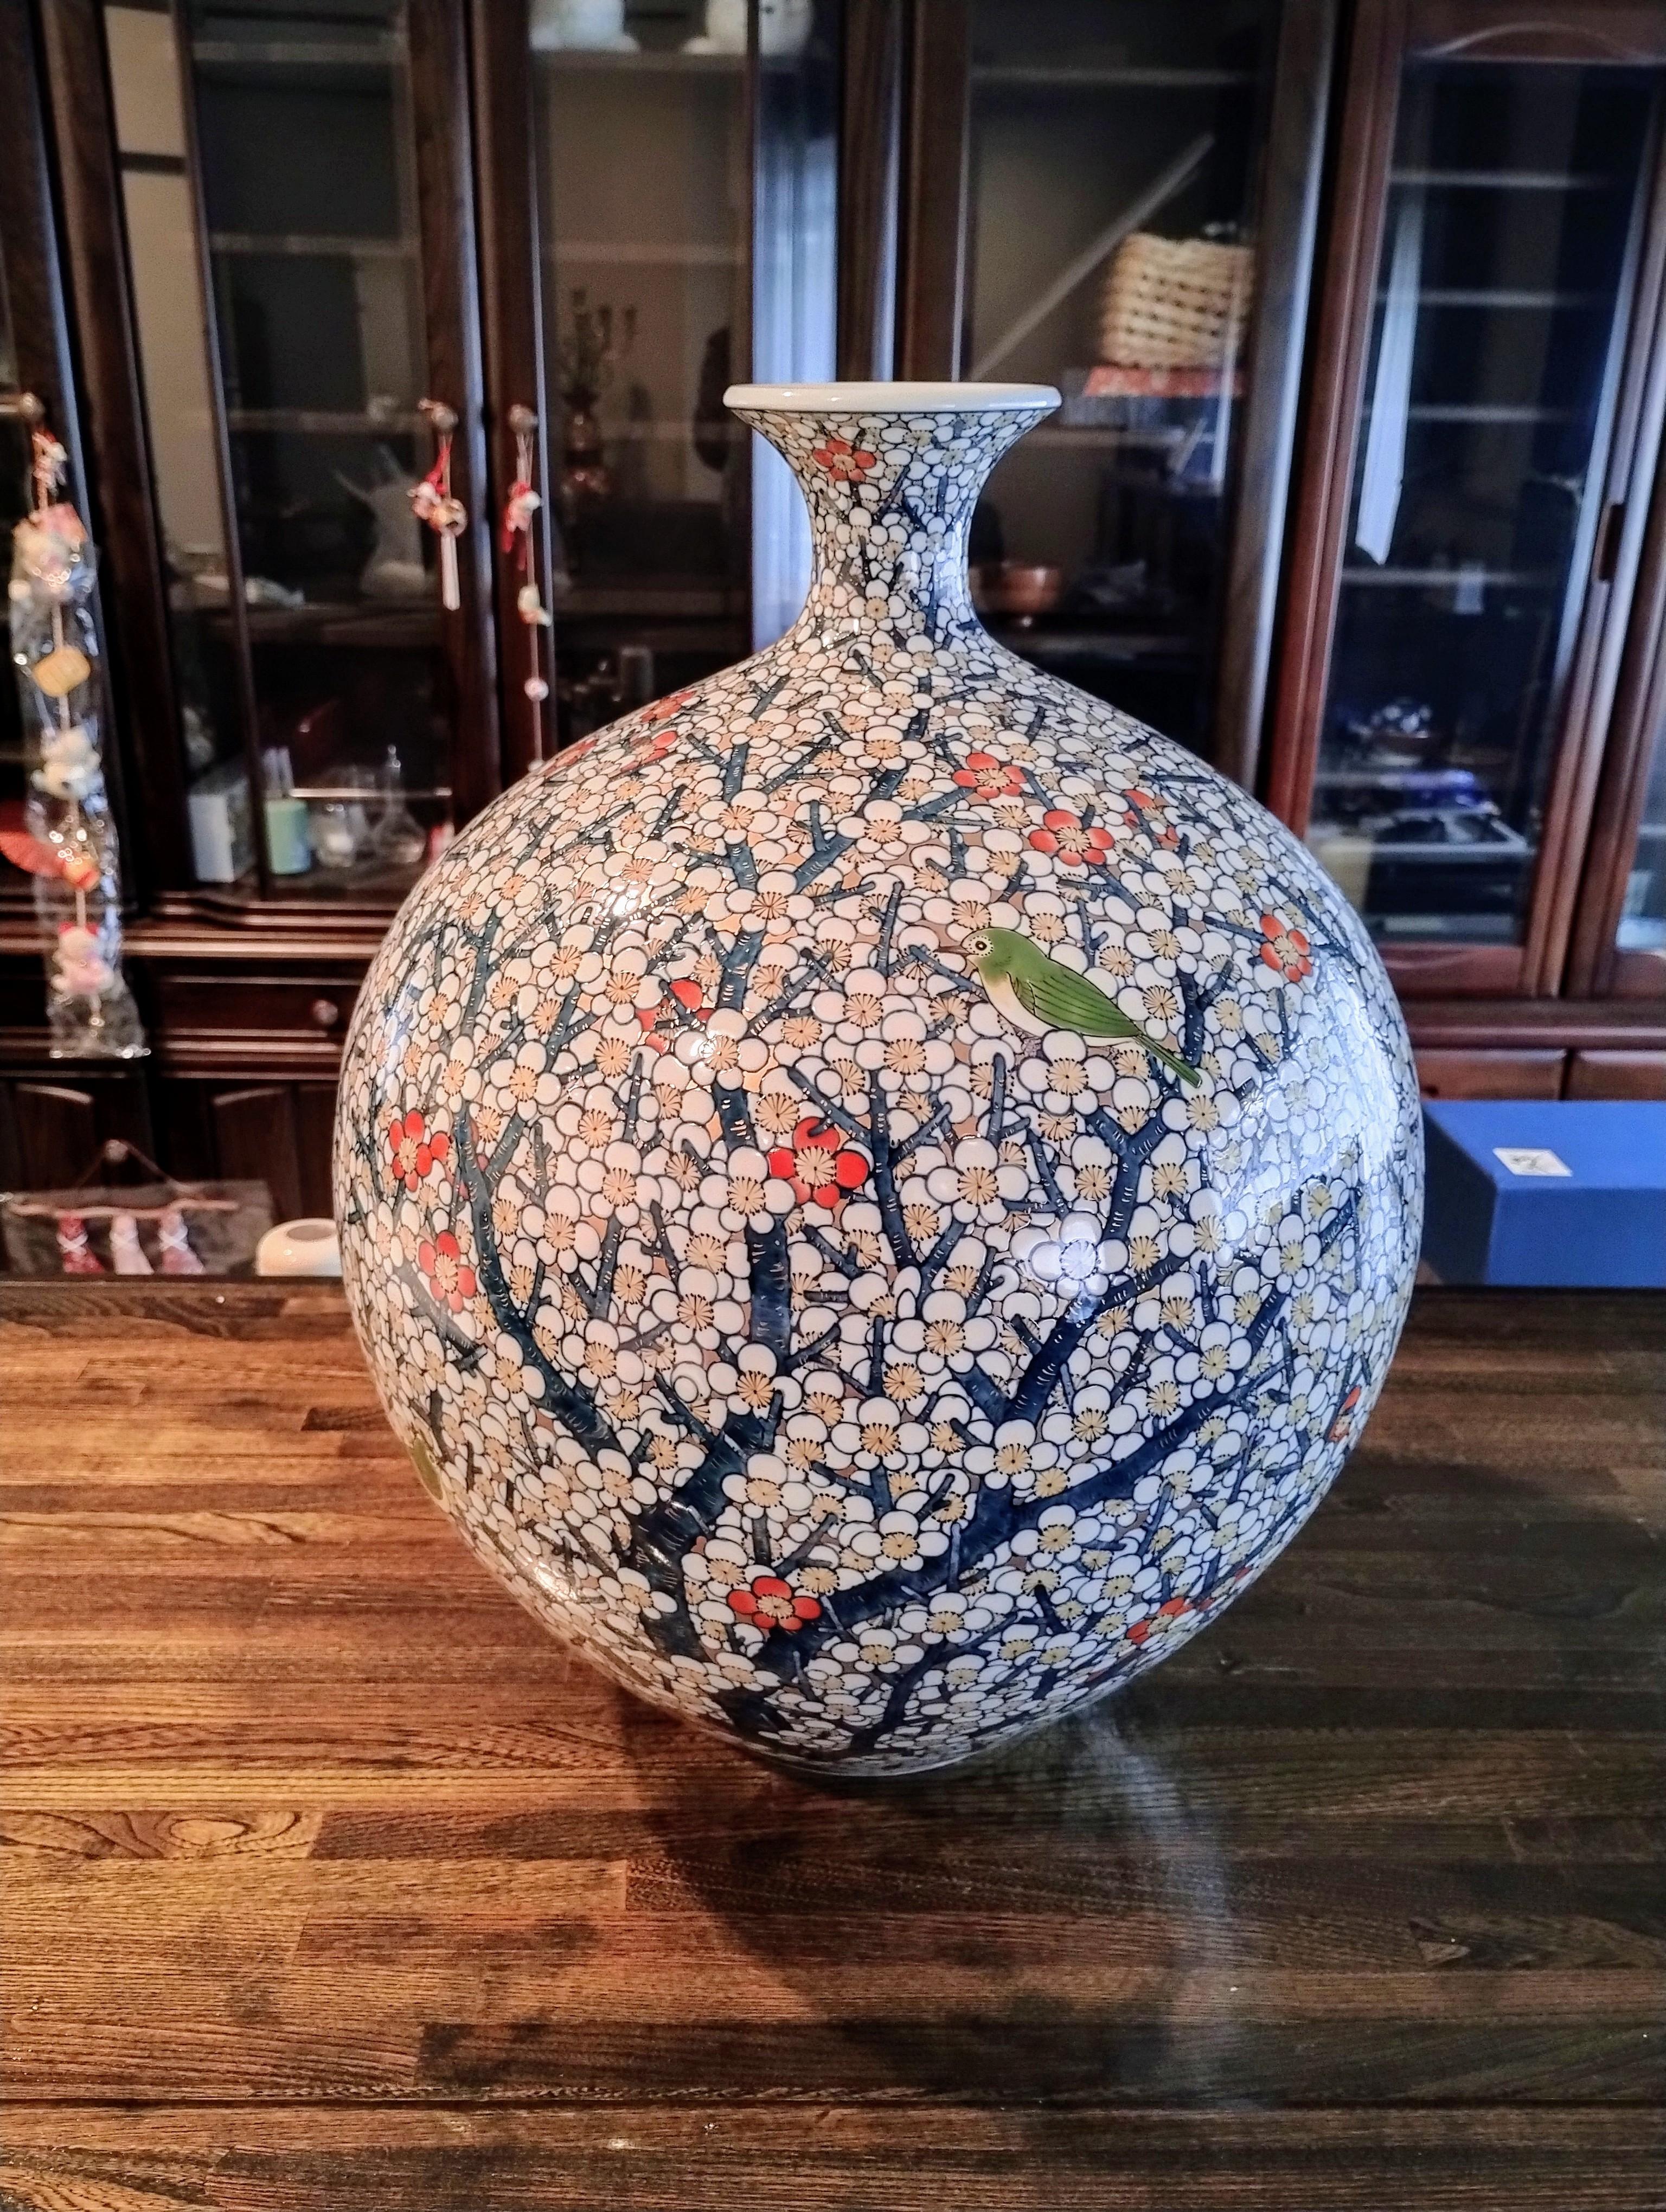 Extraordinaire très grand vase contemporain japonais en porcelaine décorative, peint à la main de façon extrêmement complexe en bleu profond, blanc et or sur un corps de forme balustre, un chef-d'œuvre signé par un maître artiste de la porcelaine